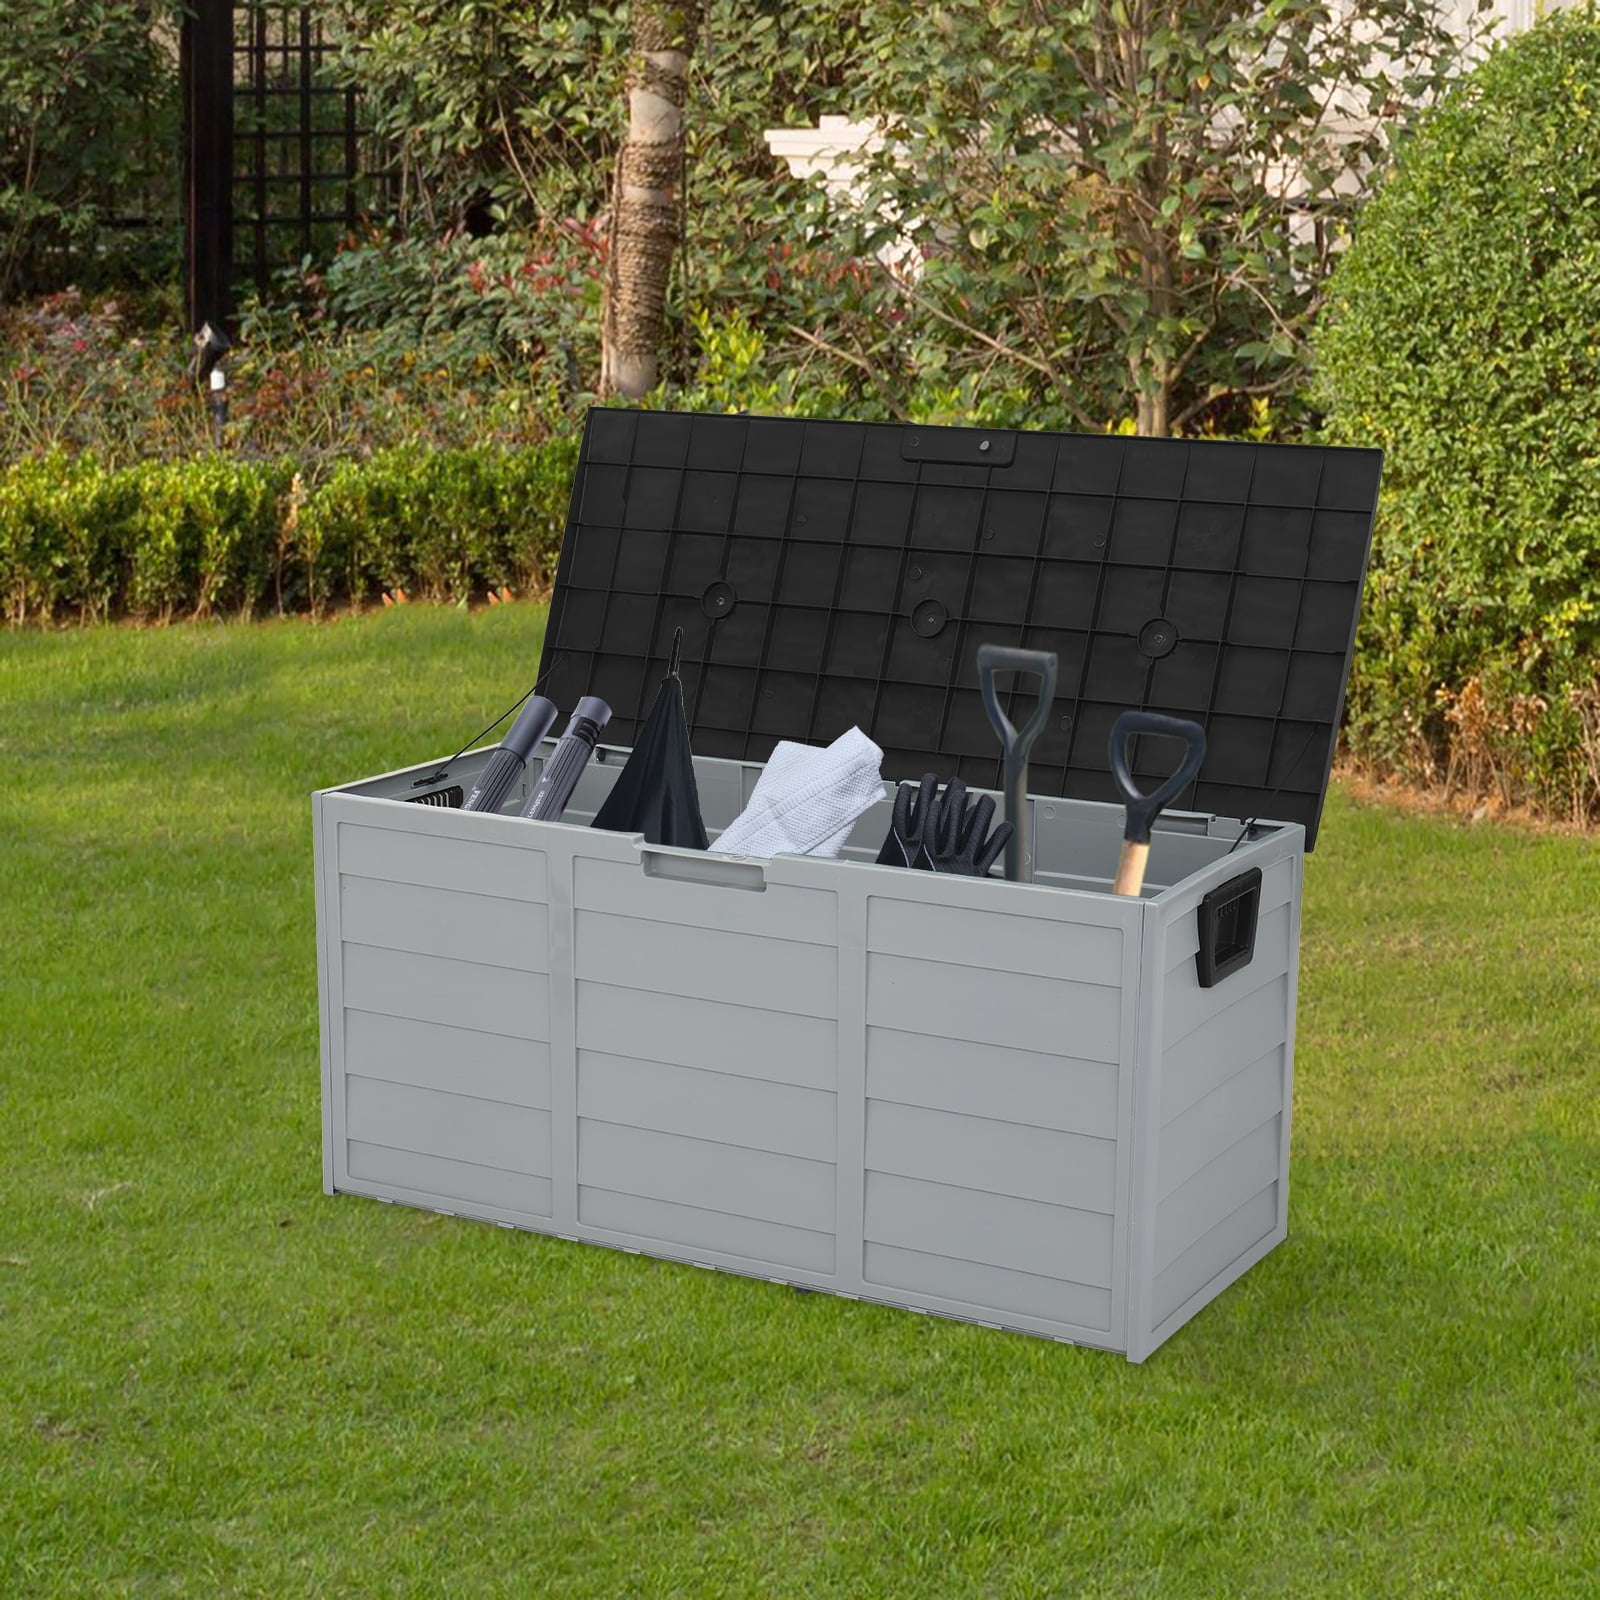 Large 750L Garden Storage Outdoor Box Plastic Utility Chest Unit